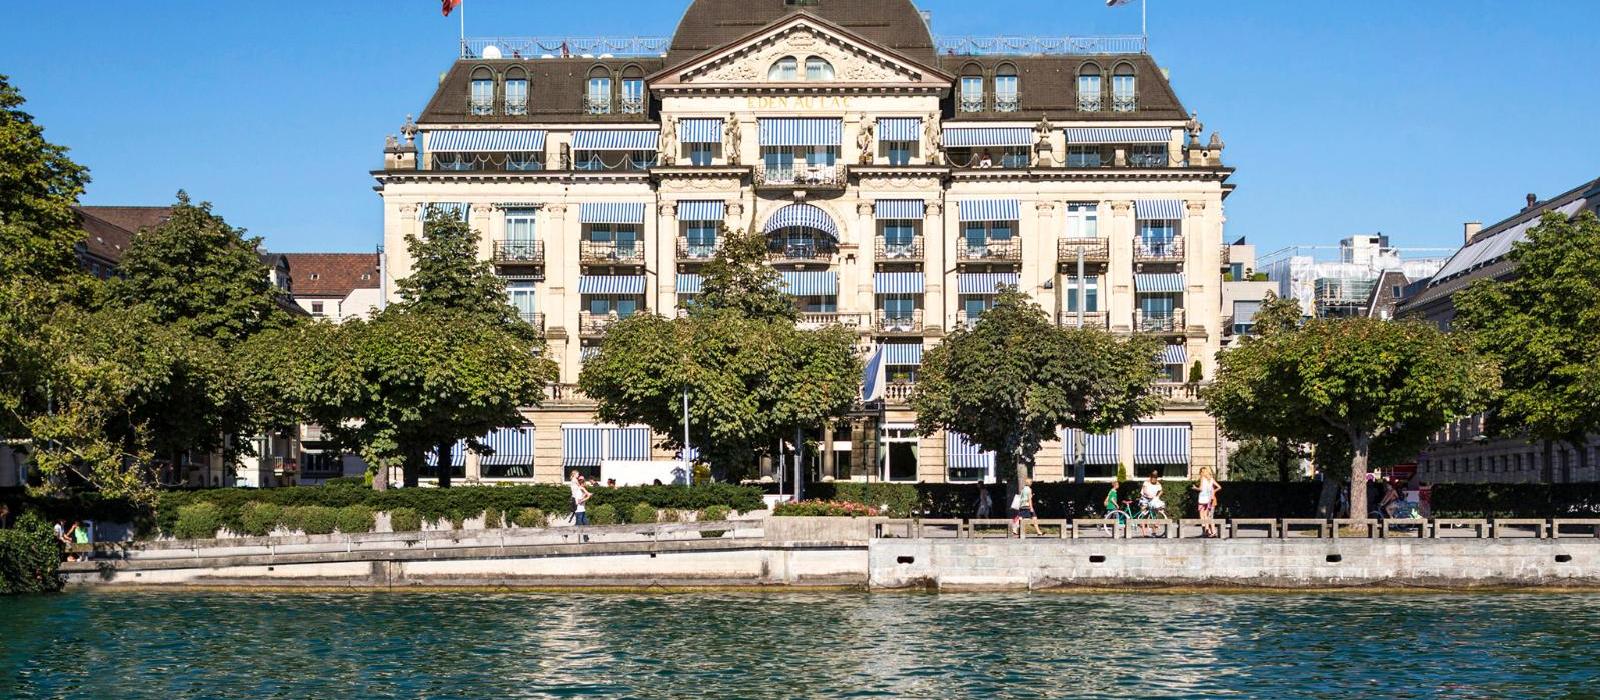 苏黎世瑞瑟夫伊甸湖畔酒店(La Reserve Eden au Lac Zurich) 图片  www.lhw.cn